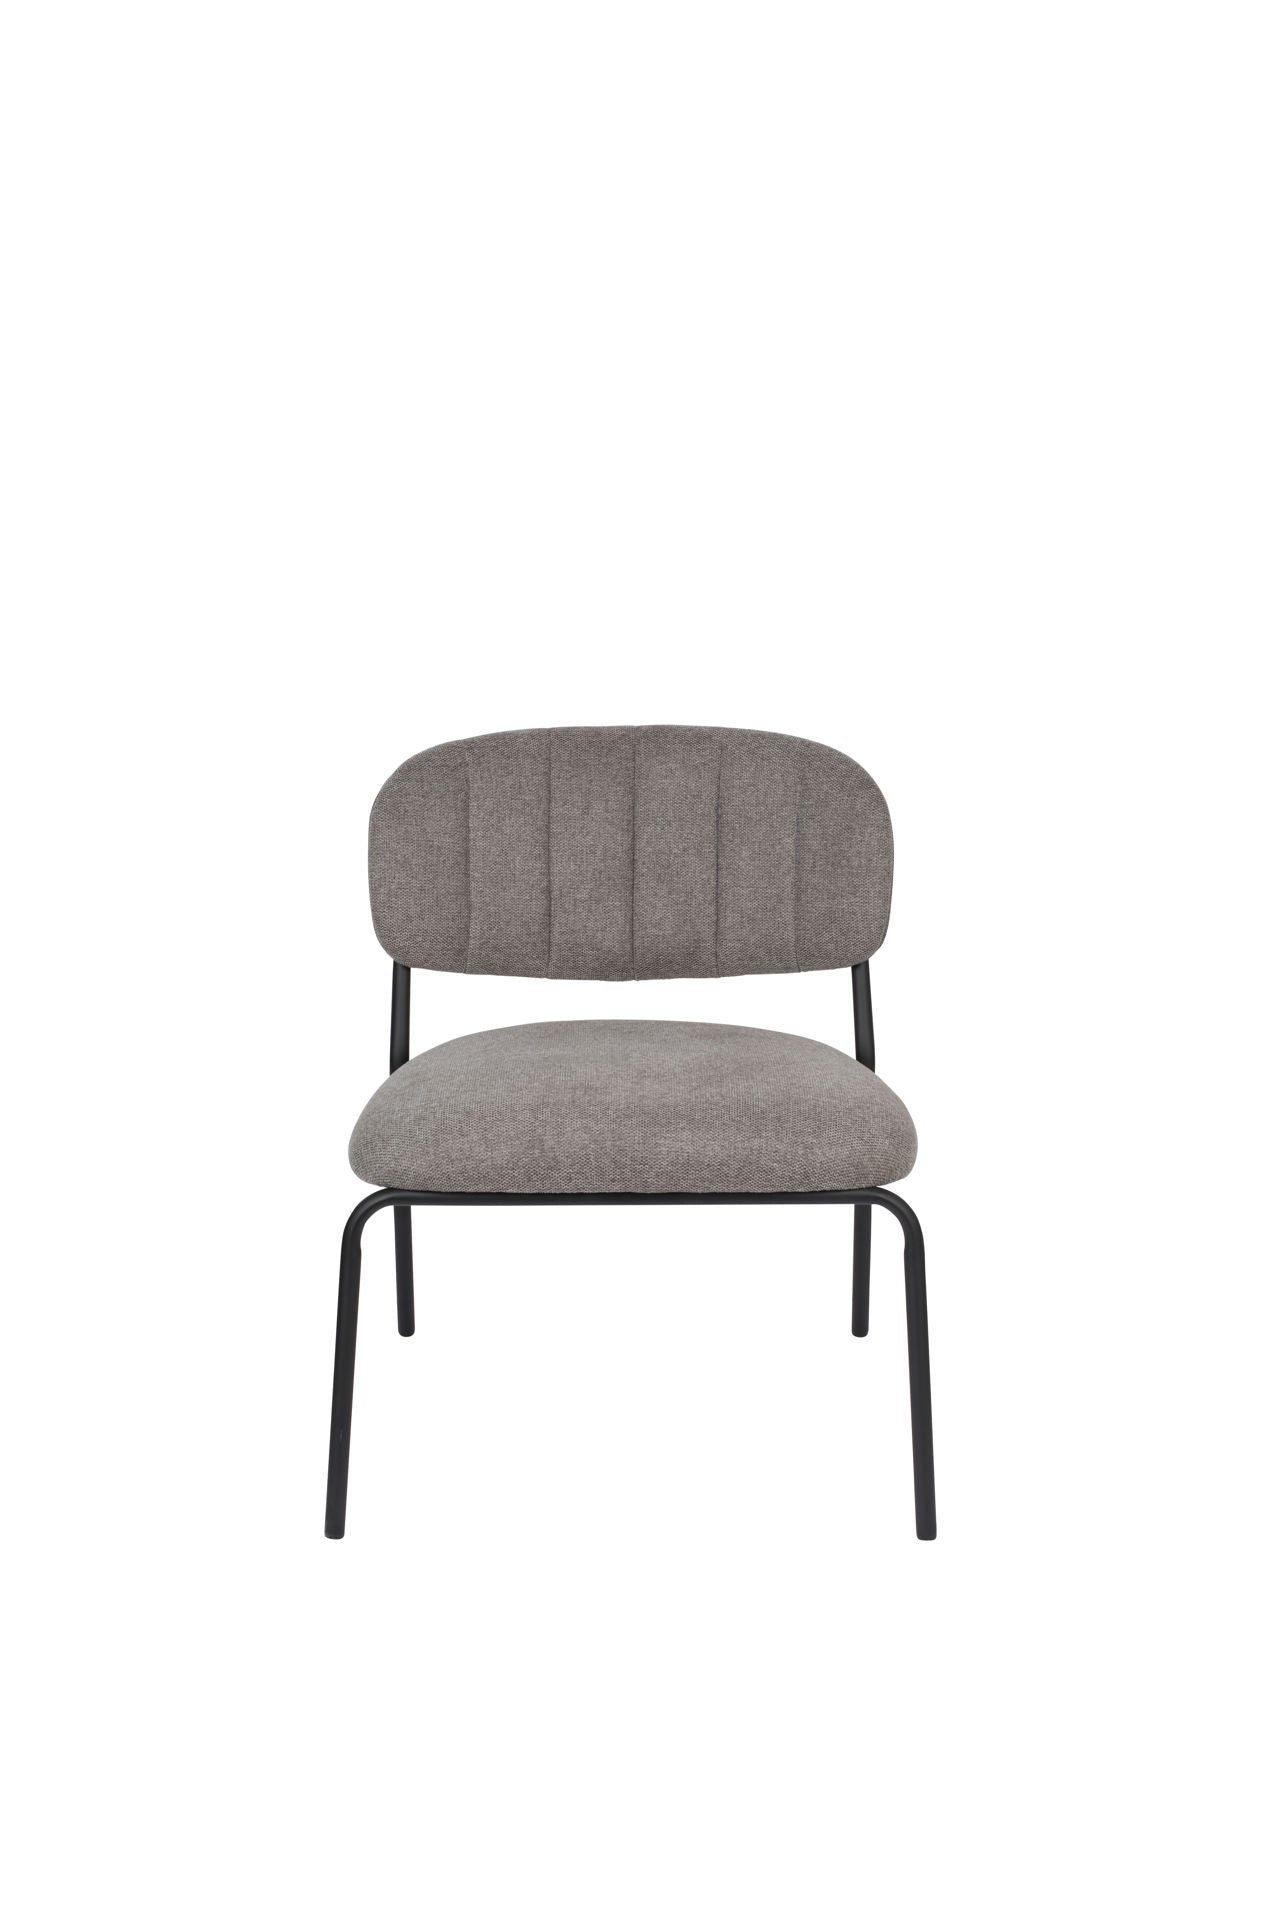 Nancy's Scotts Valley Lounge Chair - Industriel - Gris - Polyester, Contreplaqué, Acier - 60 cm x 56 cm x 68 cm